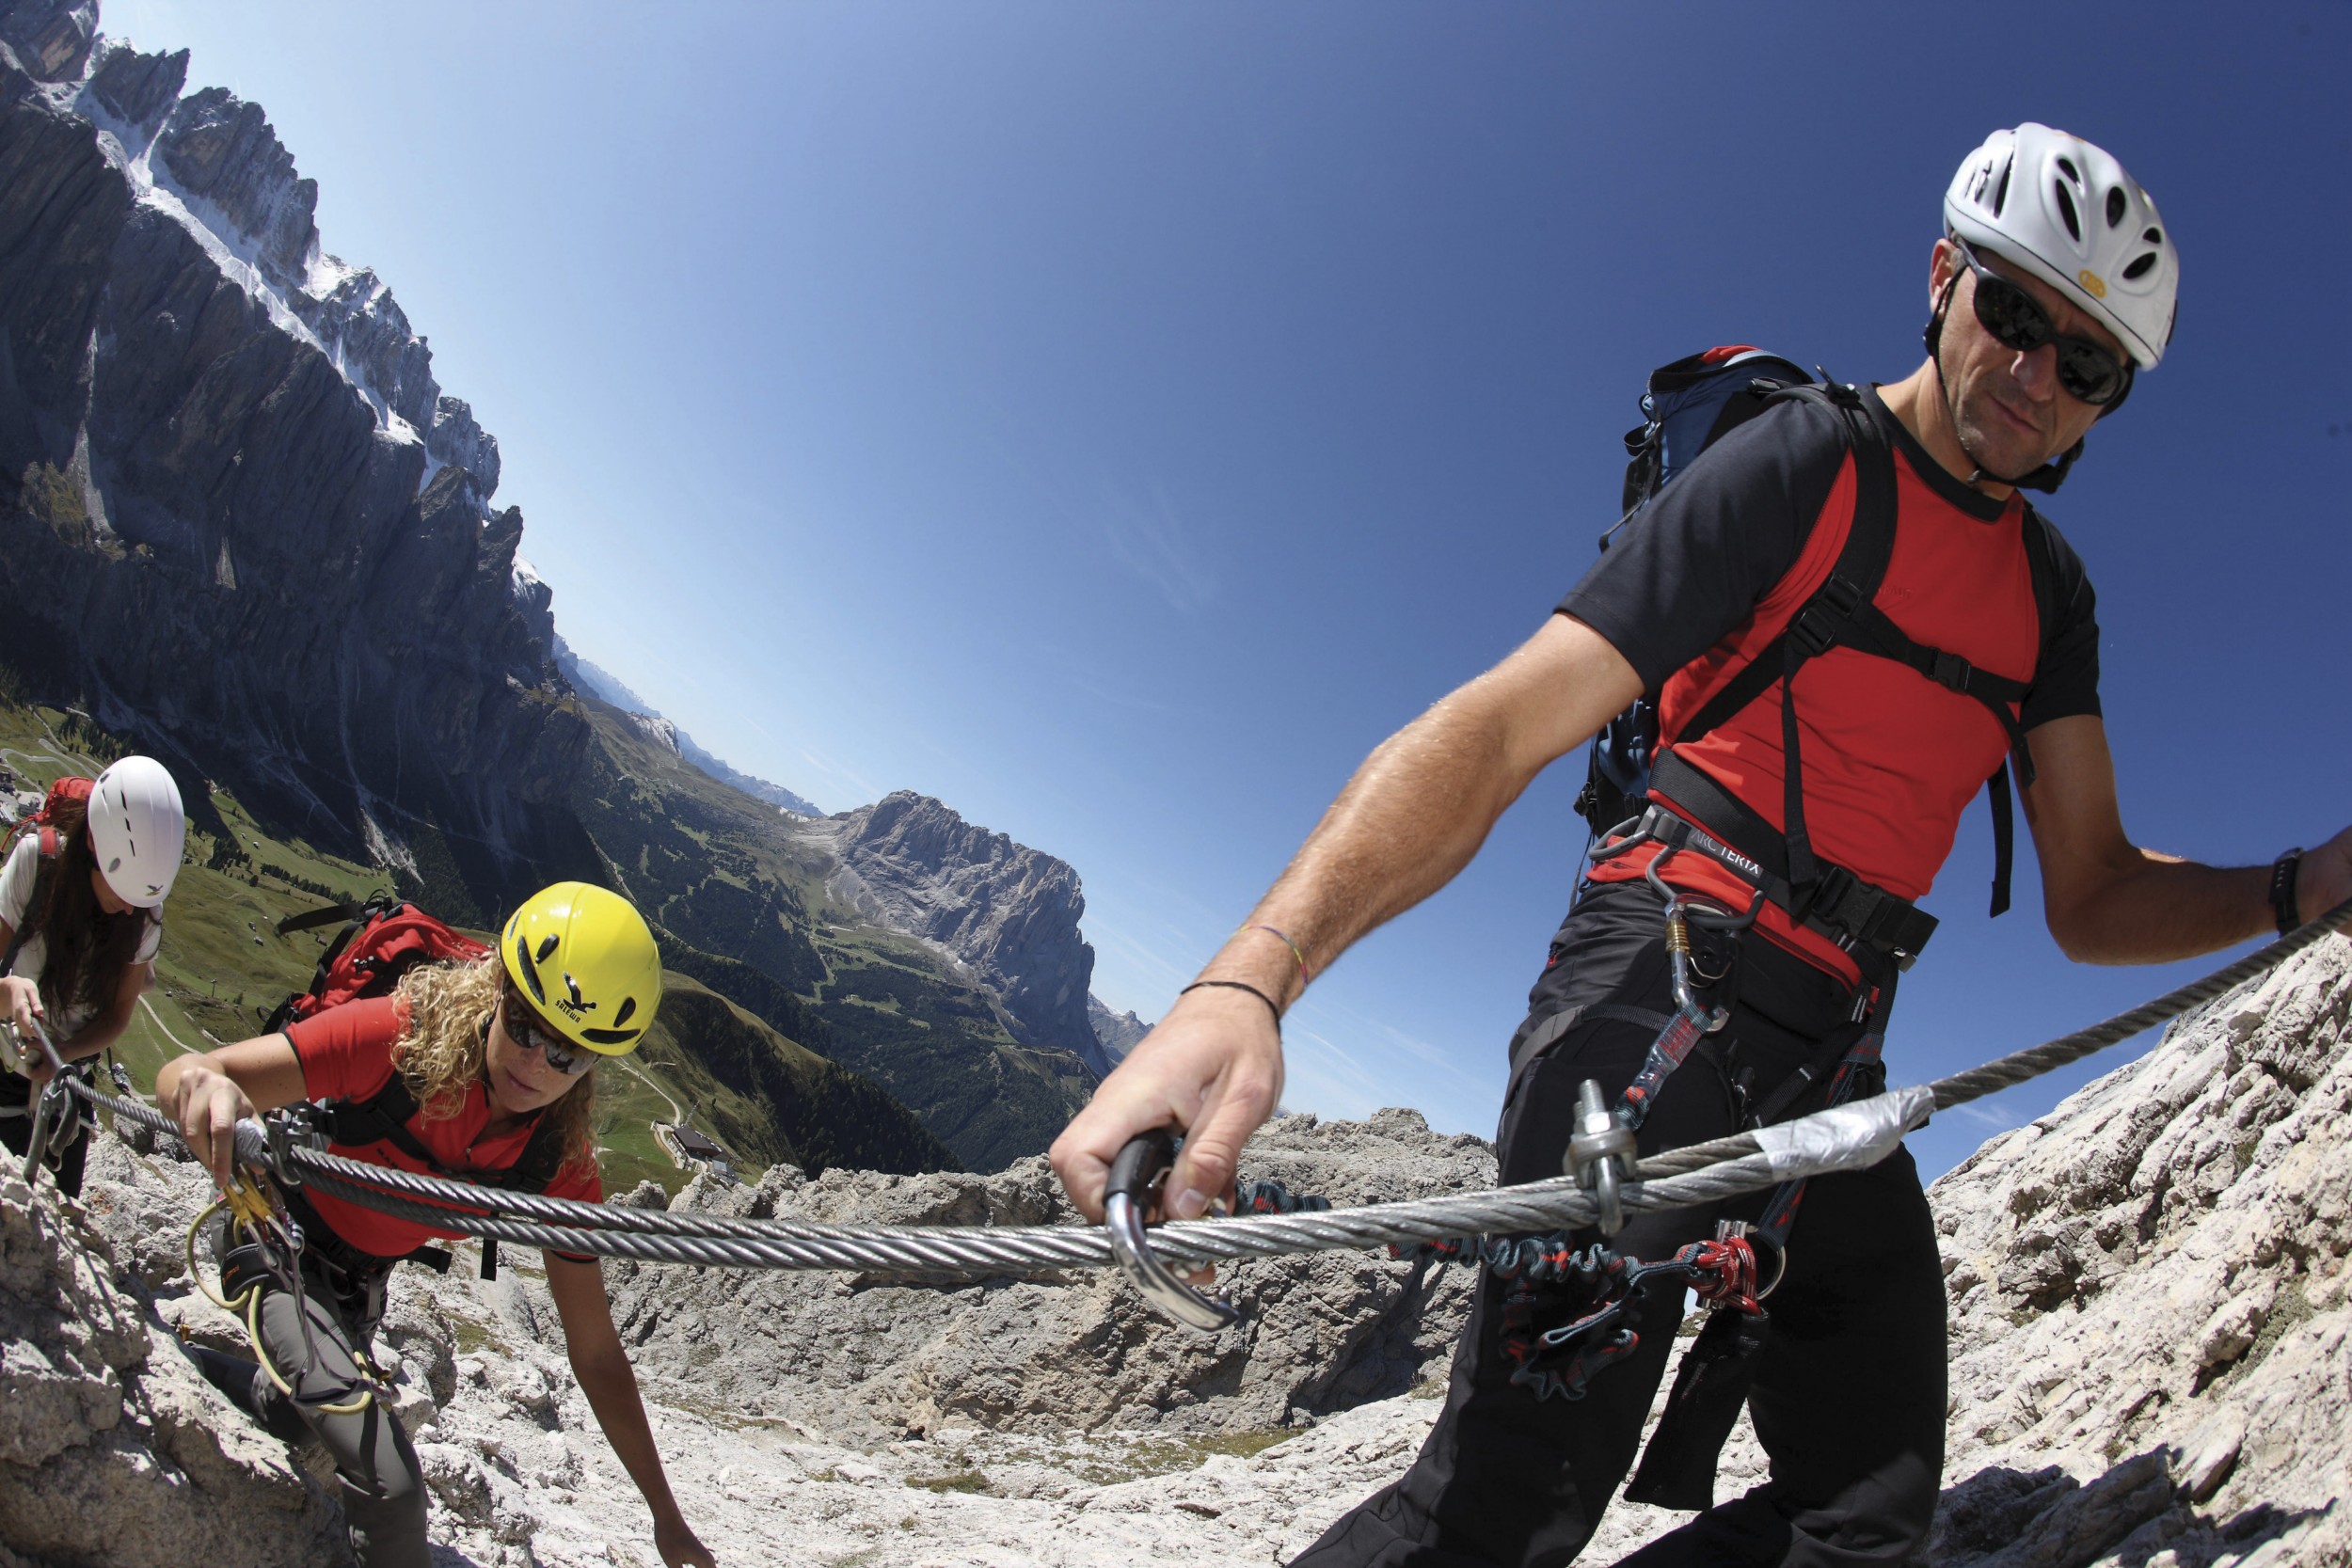 News - Central: Klettersteig - Quelle: Sdtirol Marketing - Urheber:  Alessandro Trovati 